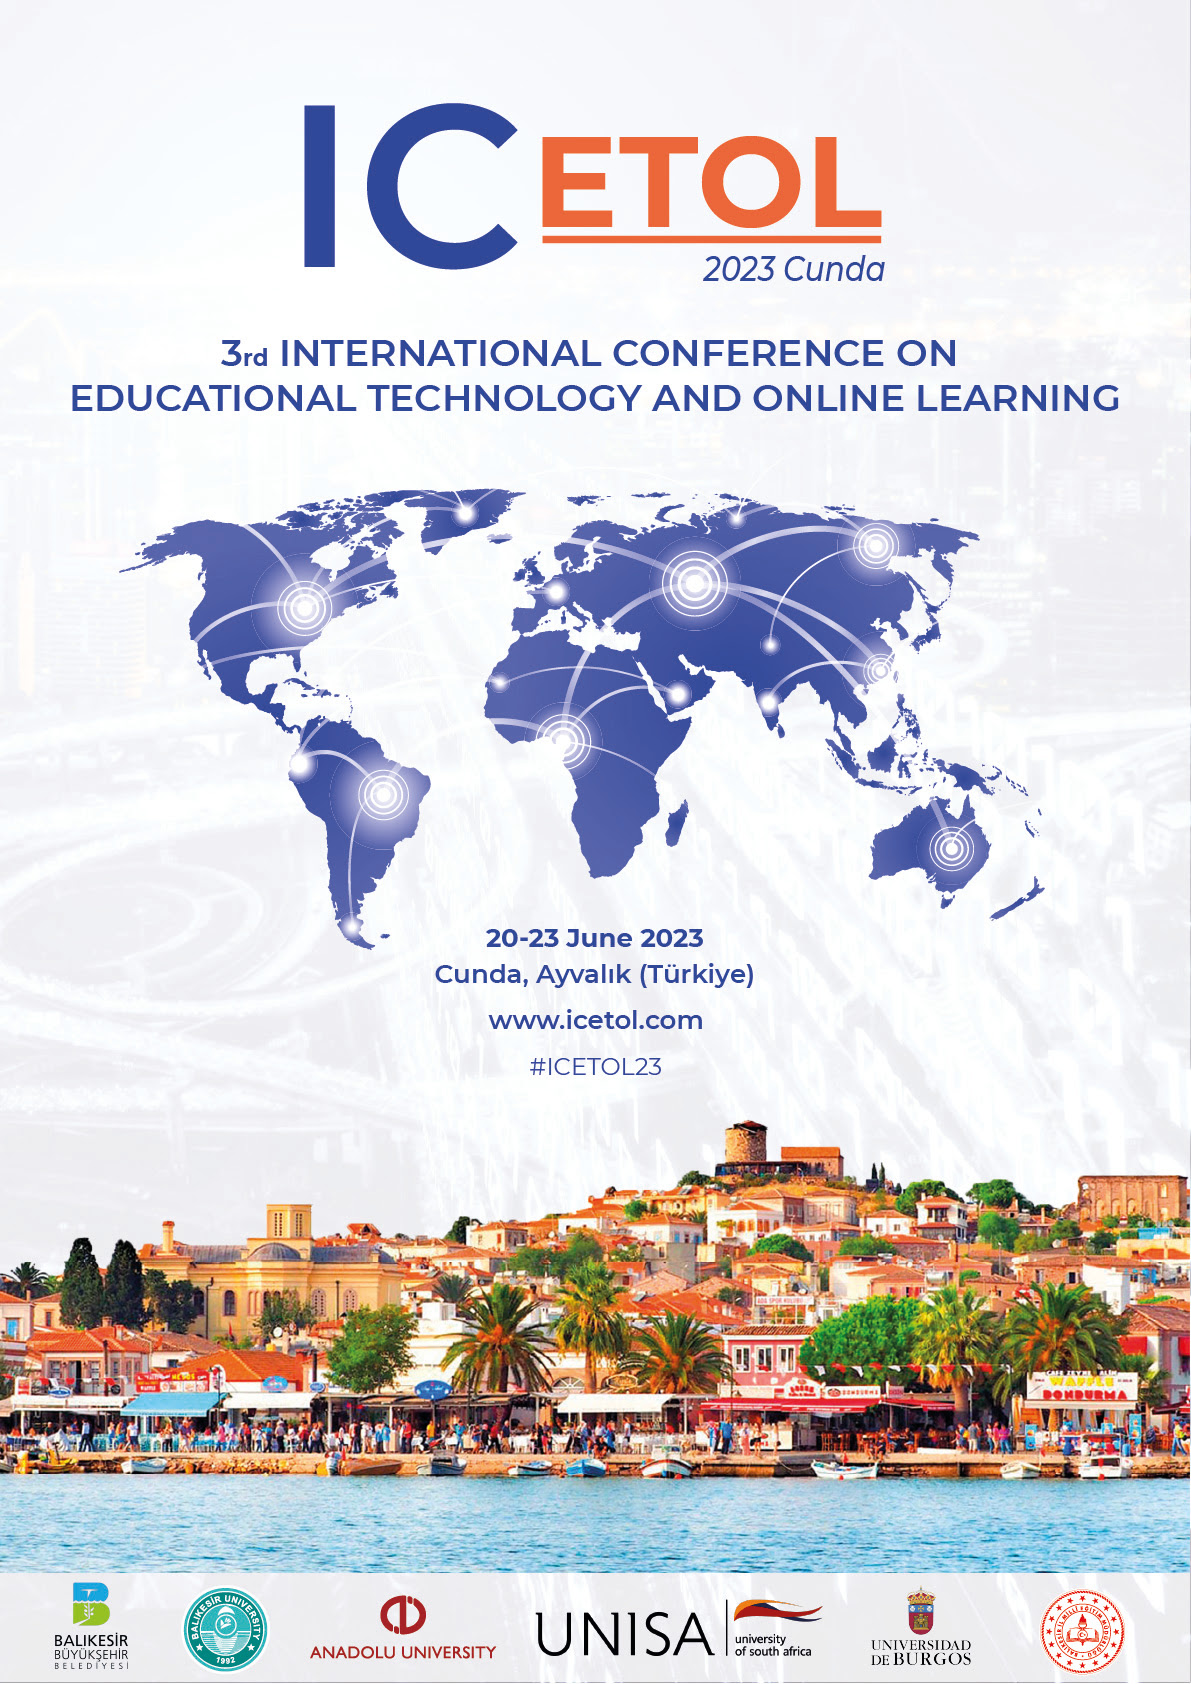 ICETOL: Międzynarodowa konferencja na temat technologii edukacyjnych i uczenia się online